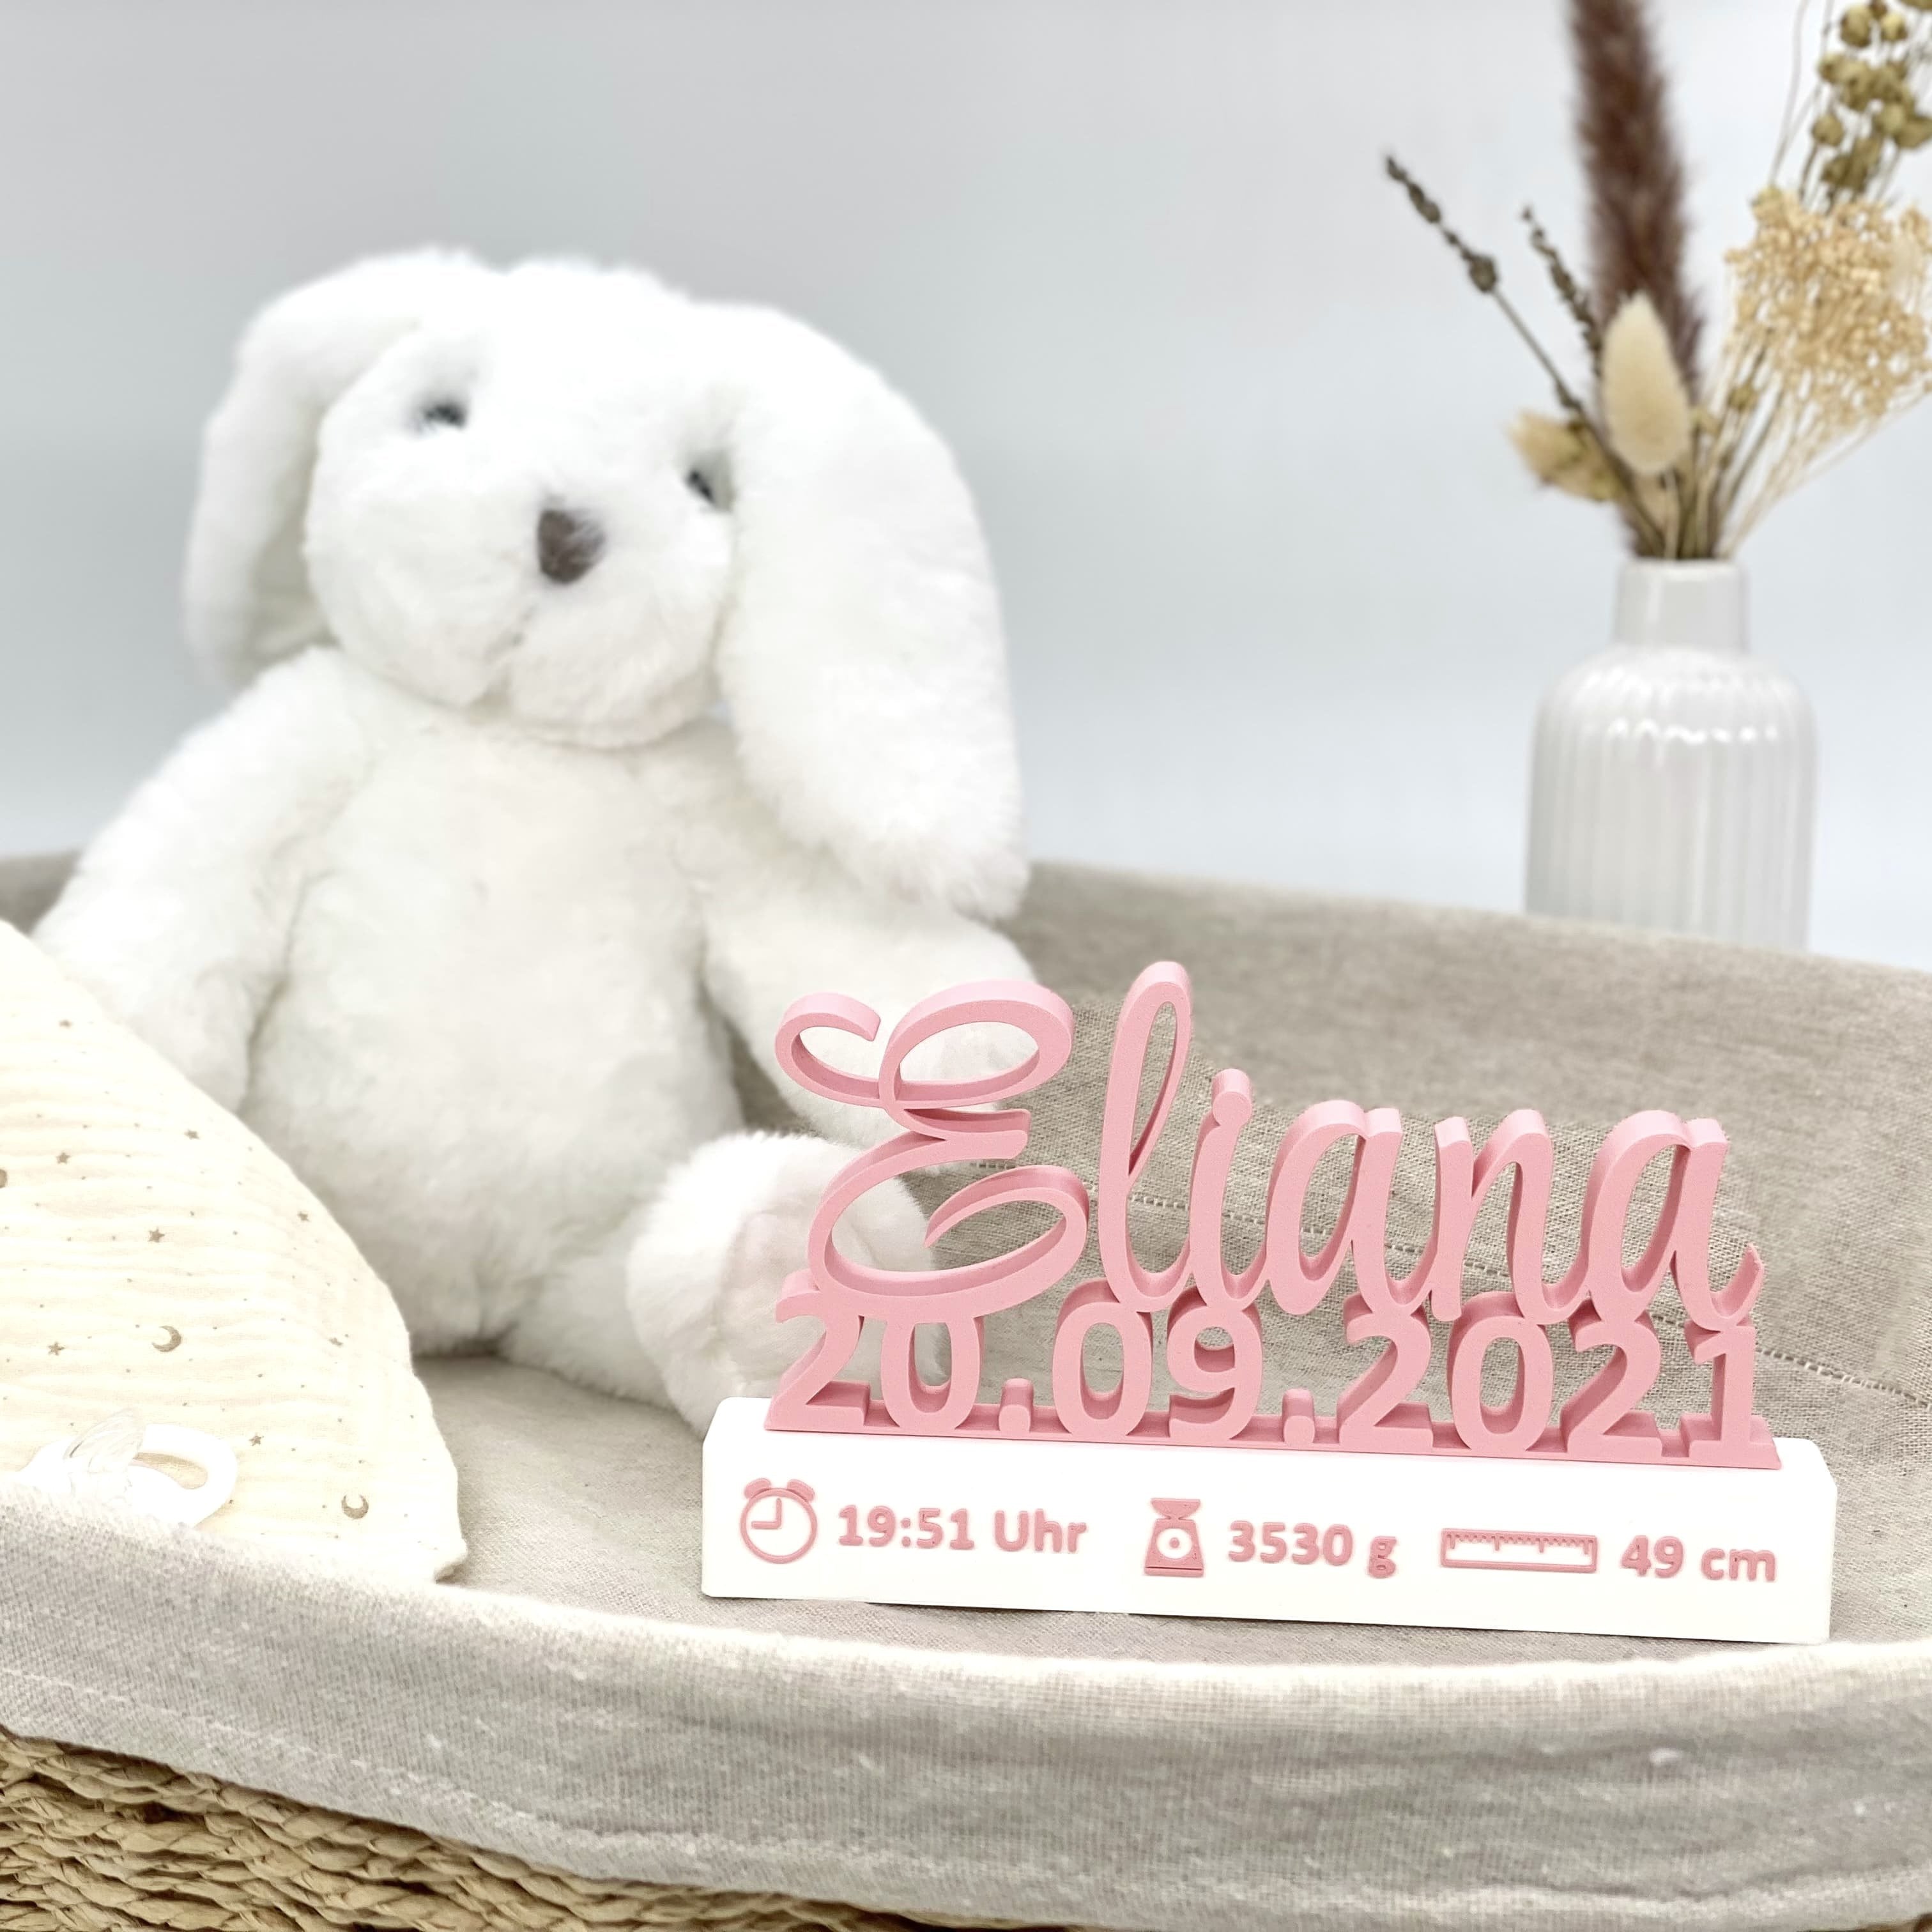 Personalisiertes Geschenk zur Geburt Baby Name mit Geburtsdatum und farbig aufgedruckten Geburtsangaben (Uhrzeit, Gewicht, Größe) 3D gedruckt - 3DManufaktur.shop